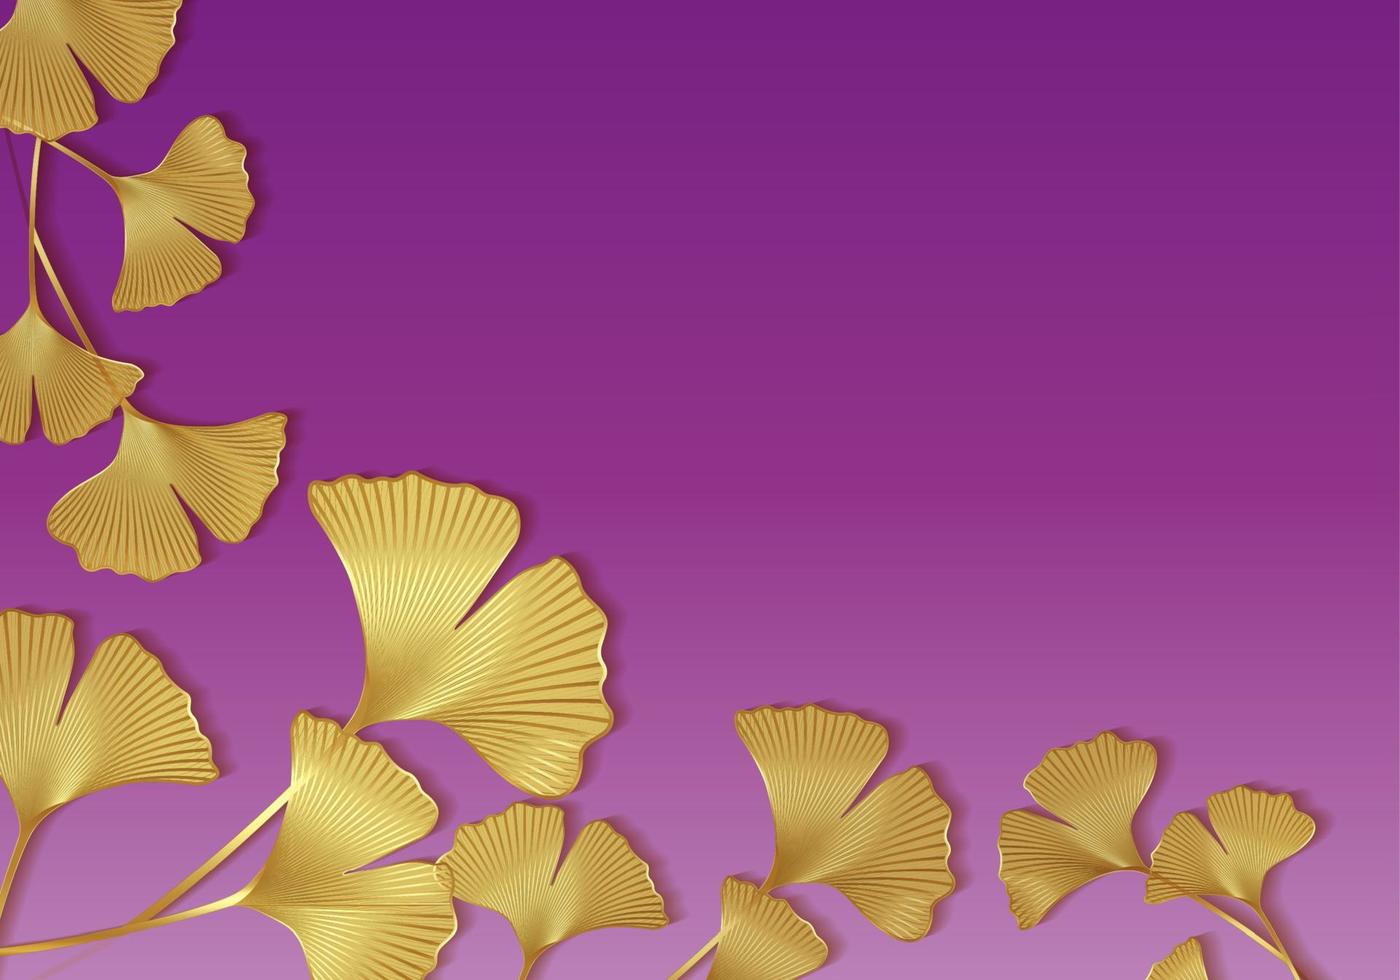 moldura dourada de folhas de ginkgo biloba isoladas em fundo roxo. borda de luxo dourada de folhas florais. modelo de design botânico de ilustração vetorial, banner com espaço de cópia para o seu texto vetor